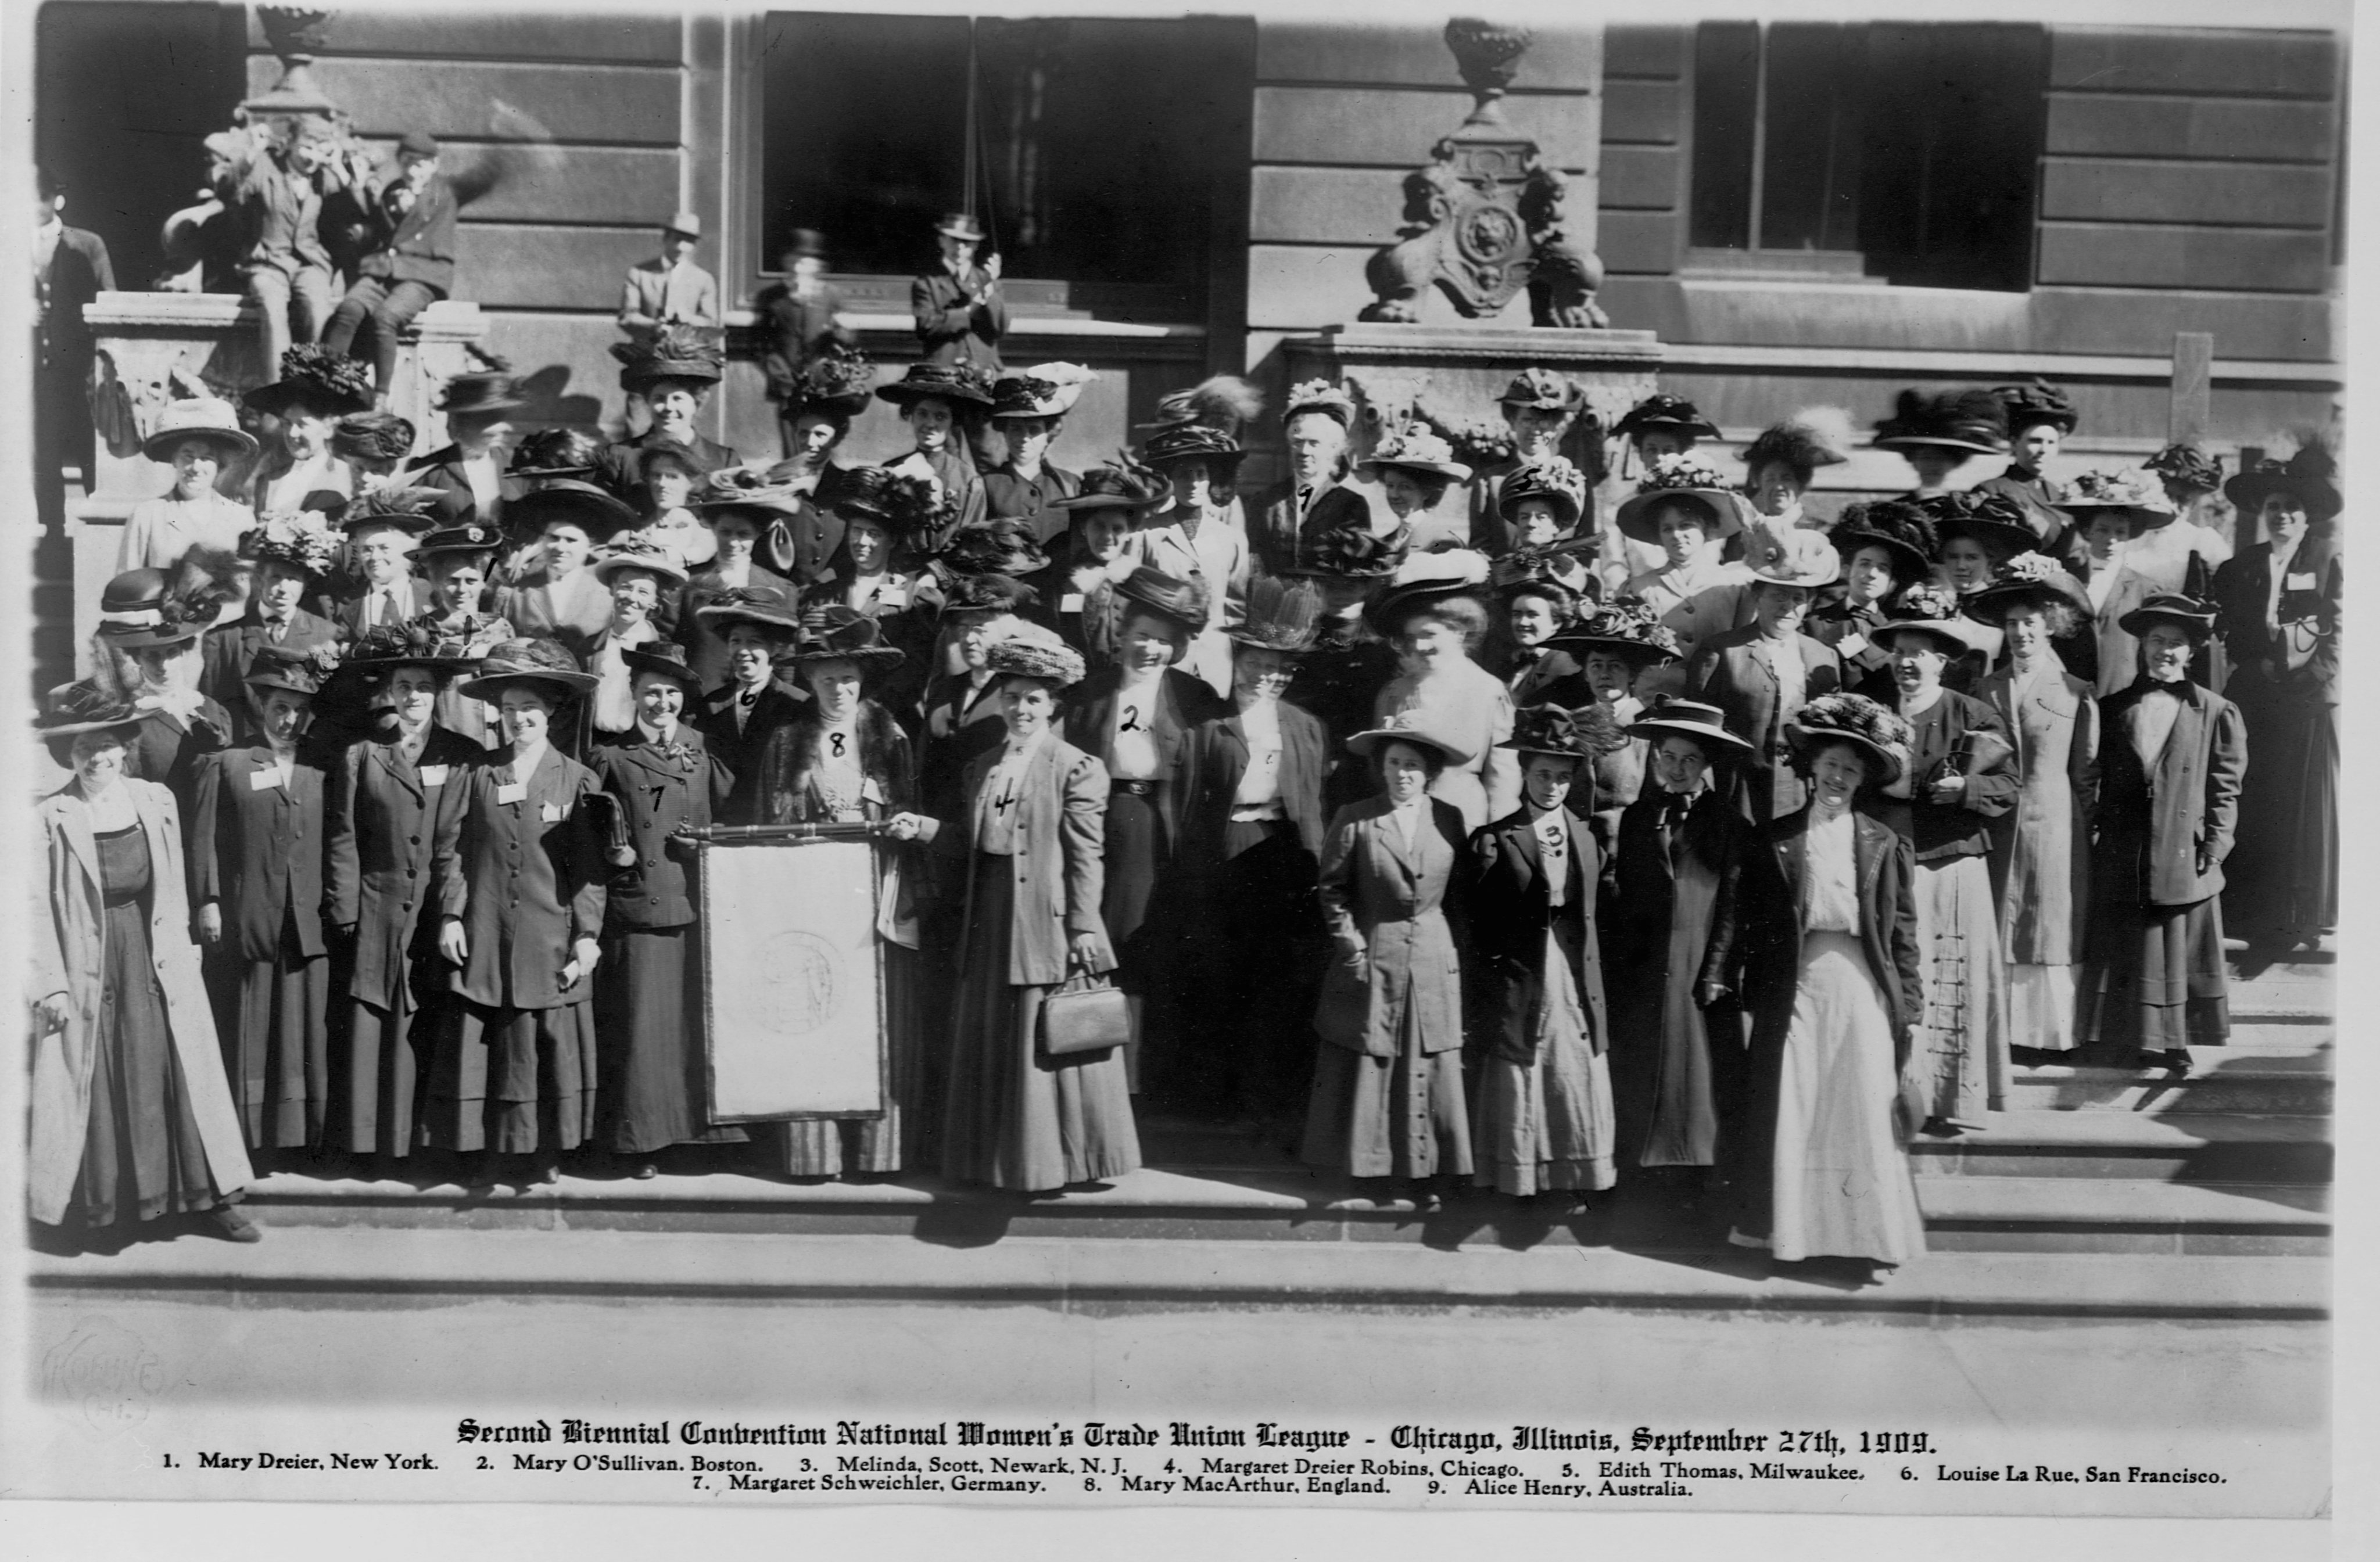 Membros da Liga do Sindicato Nacional das Mulheres, 1909